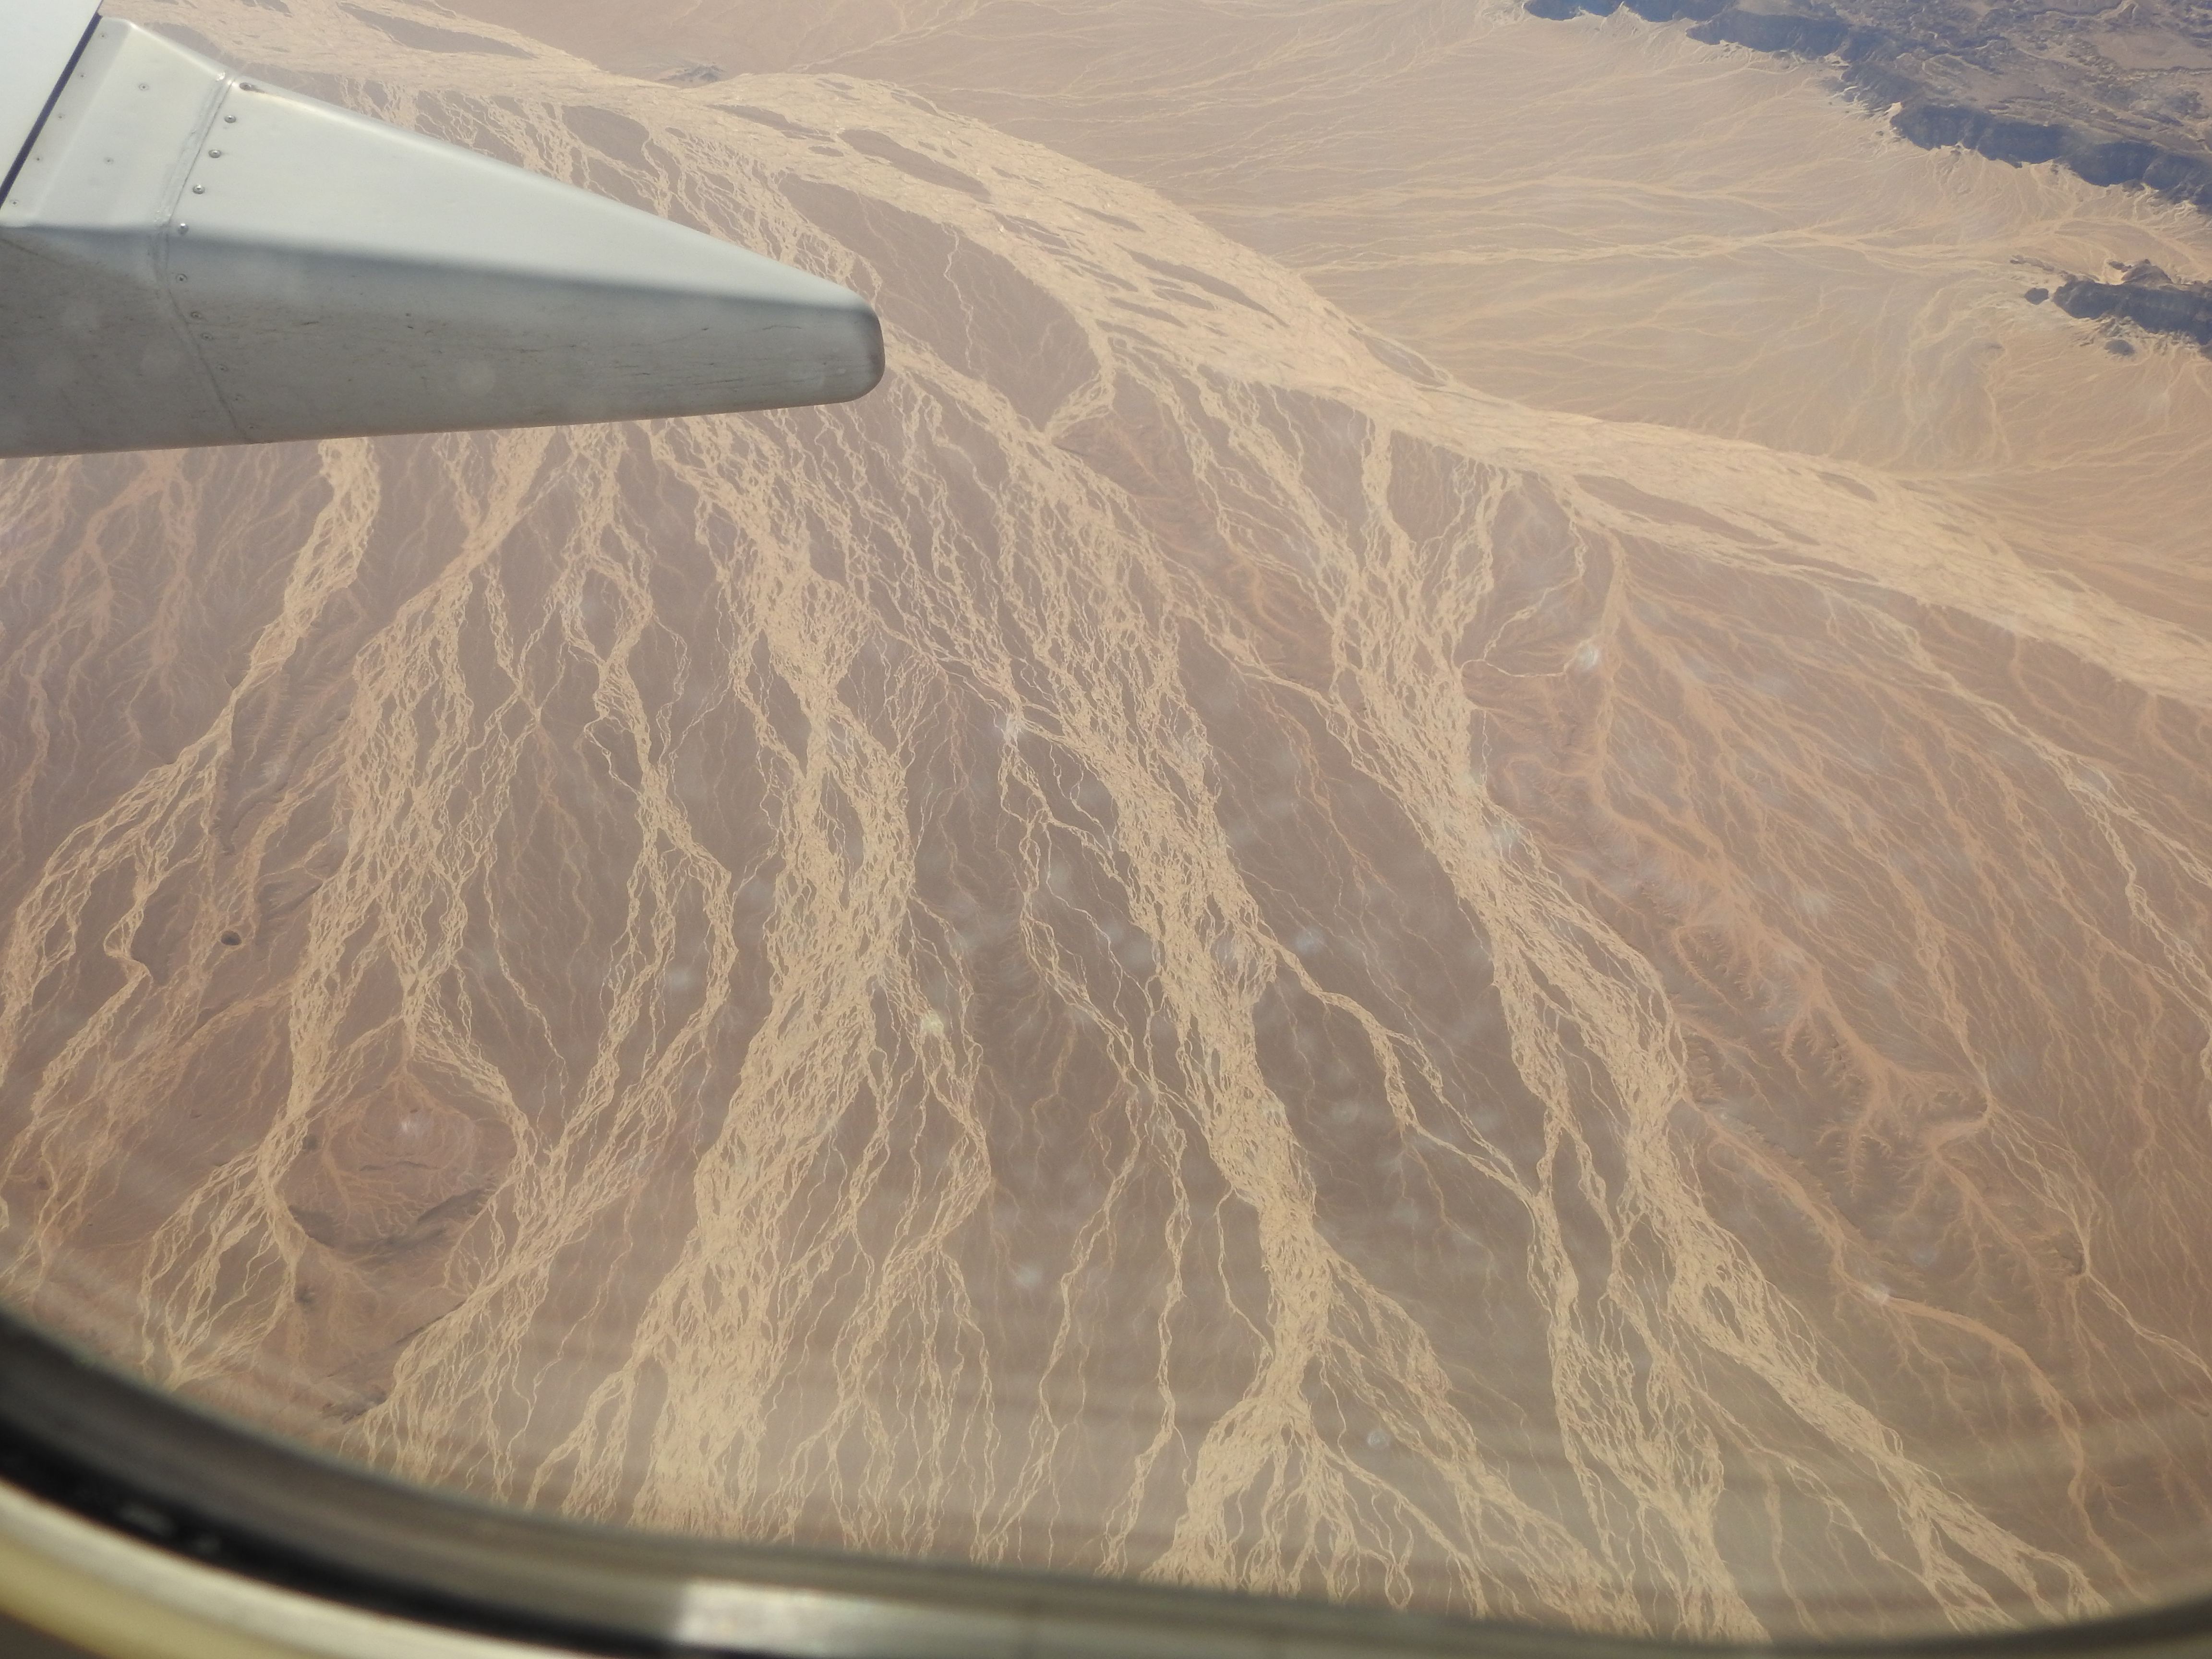 bergachtige Oostelijke Woestijn Egypte. sporen van water runoff duidelijk zichtbaar vanuit het vliegtuig